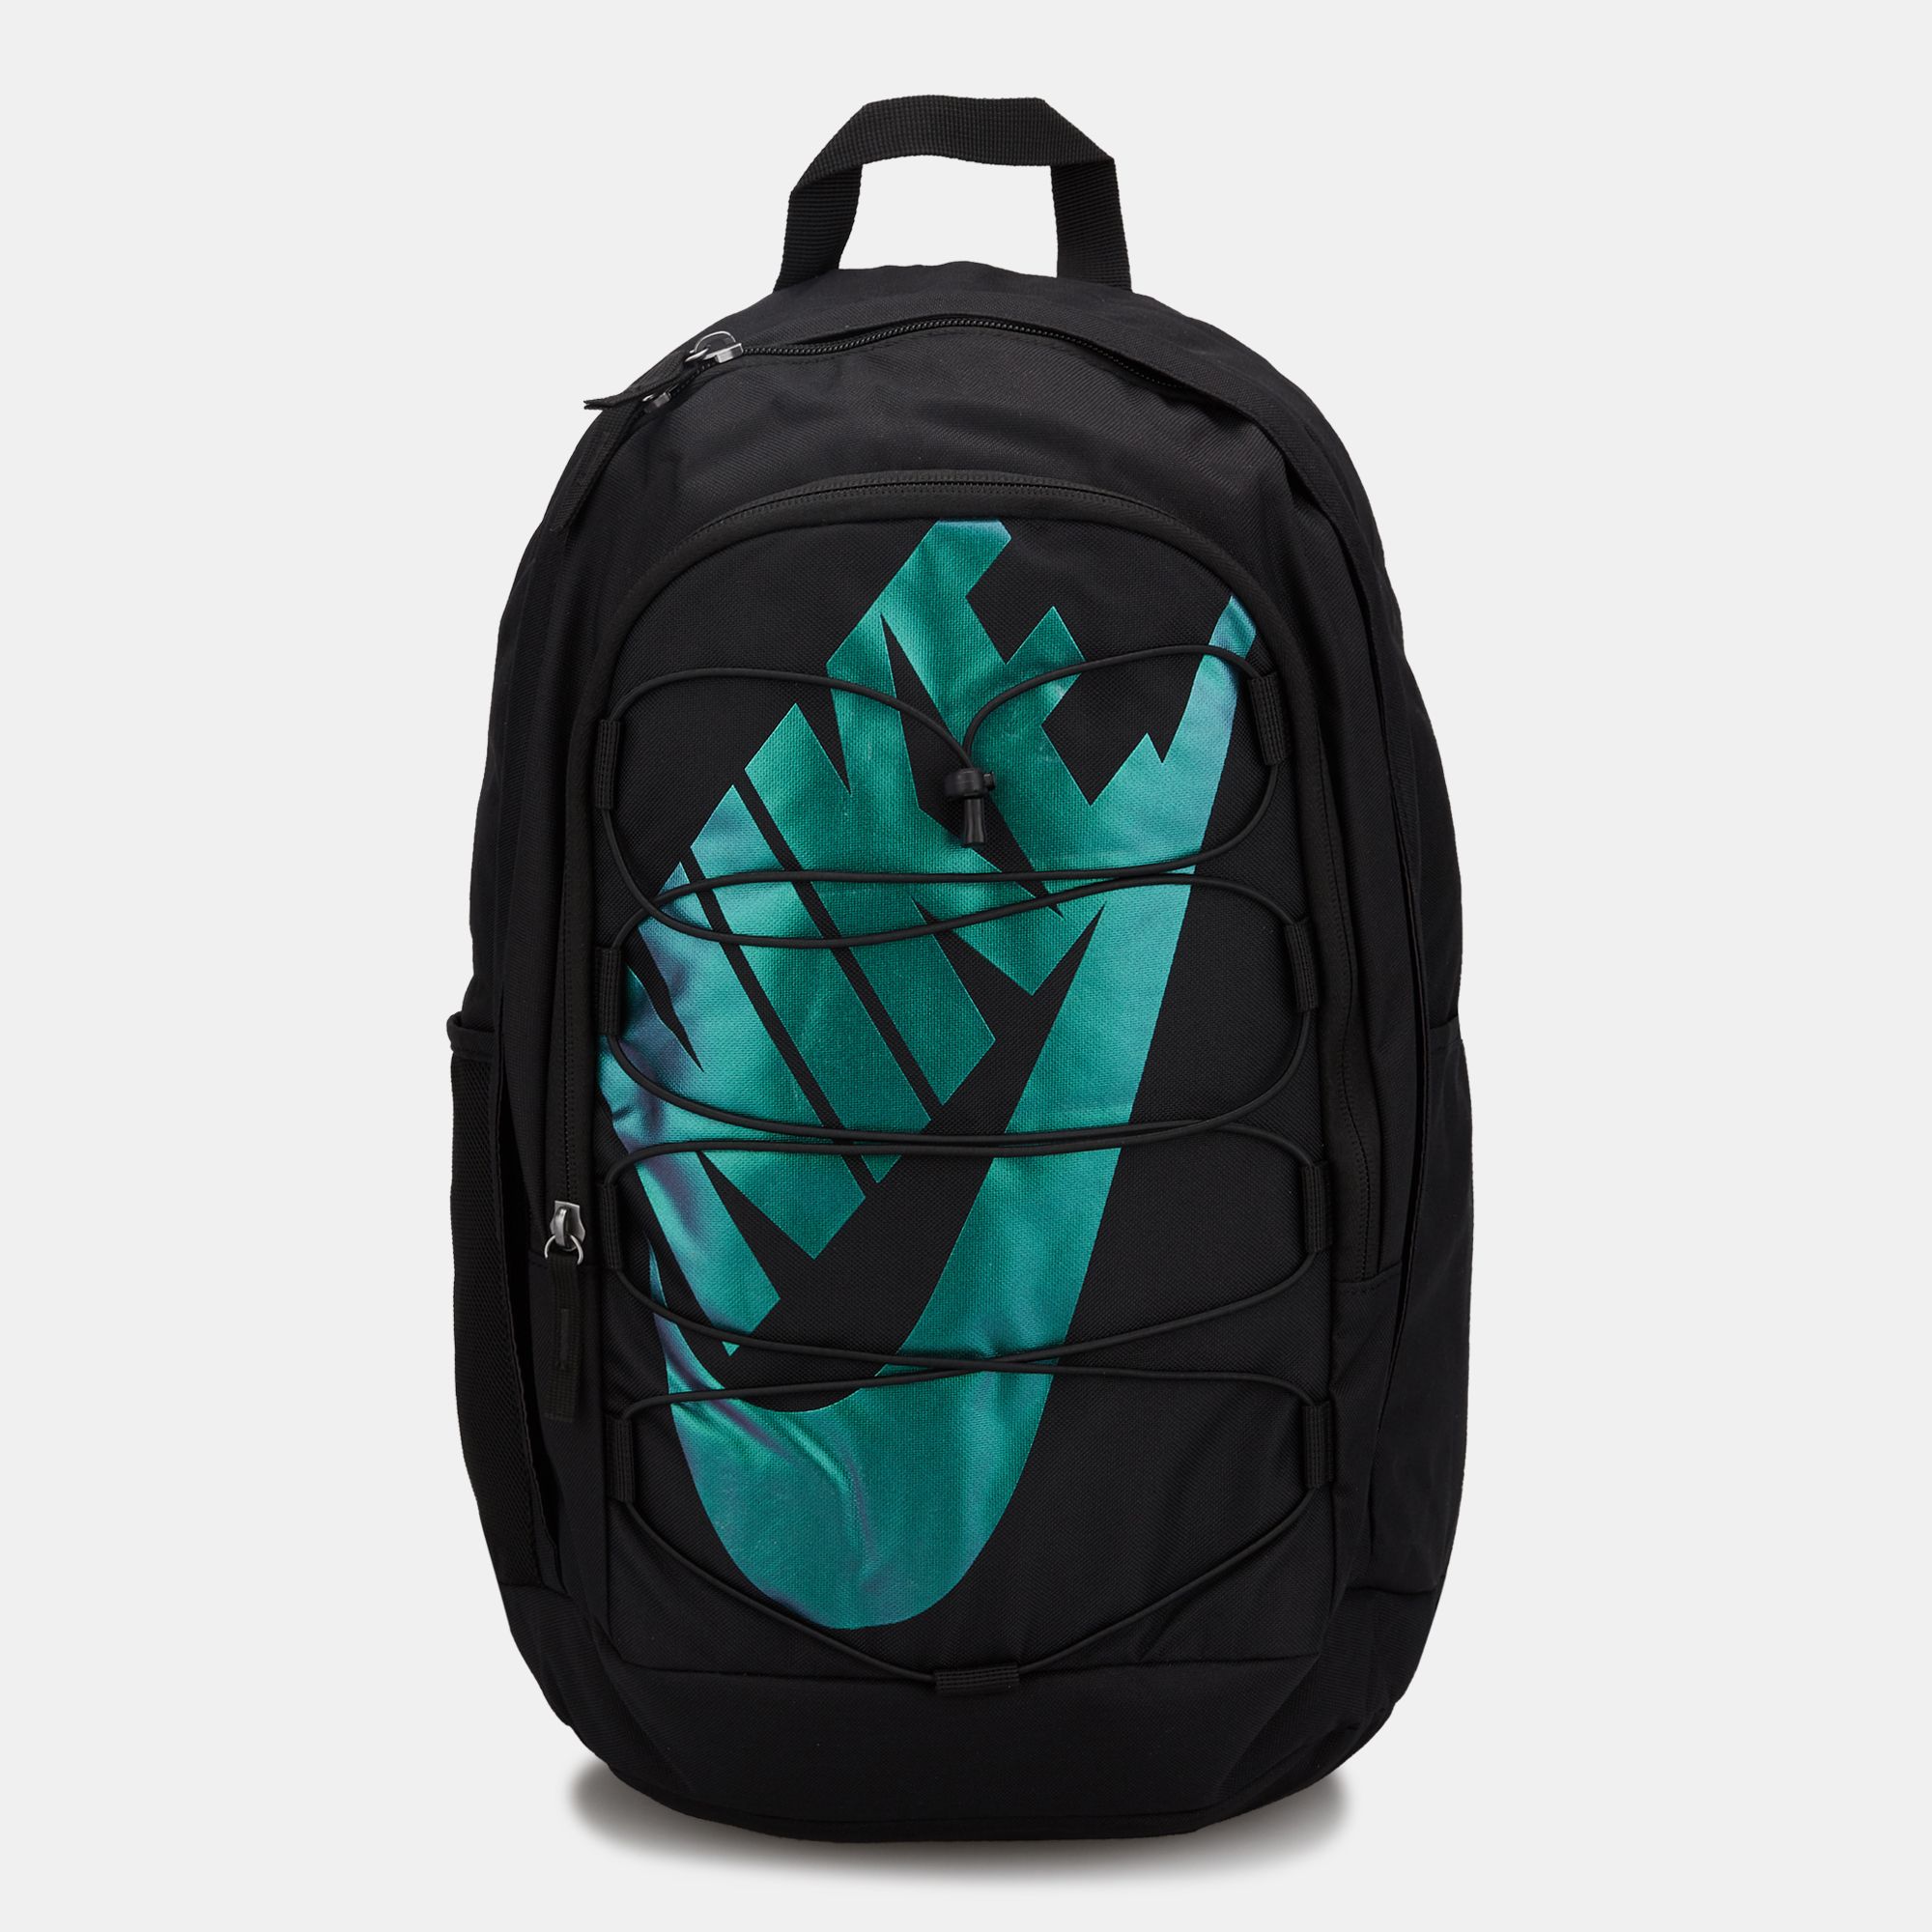 hayward 2.0 backpack